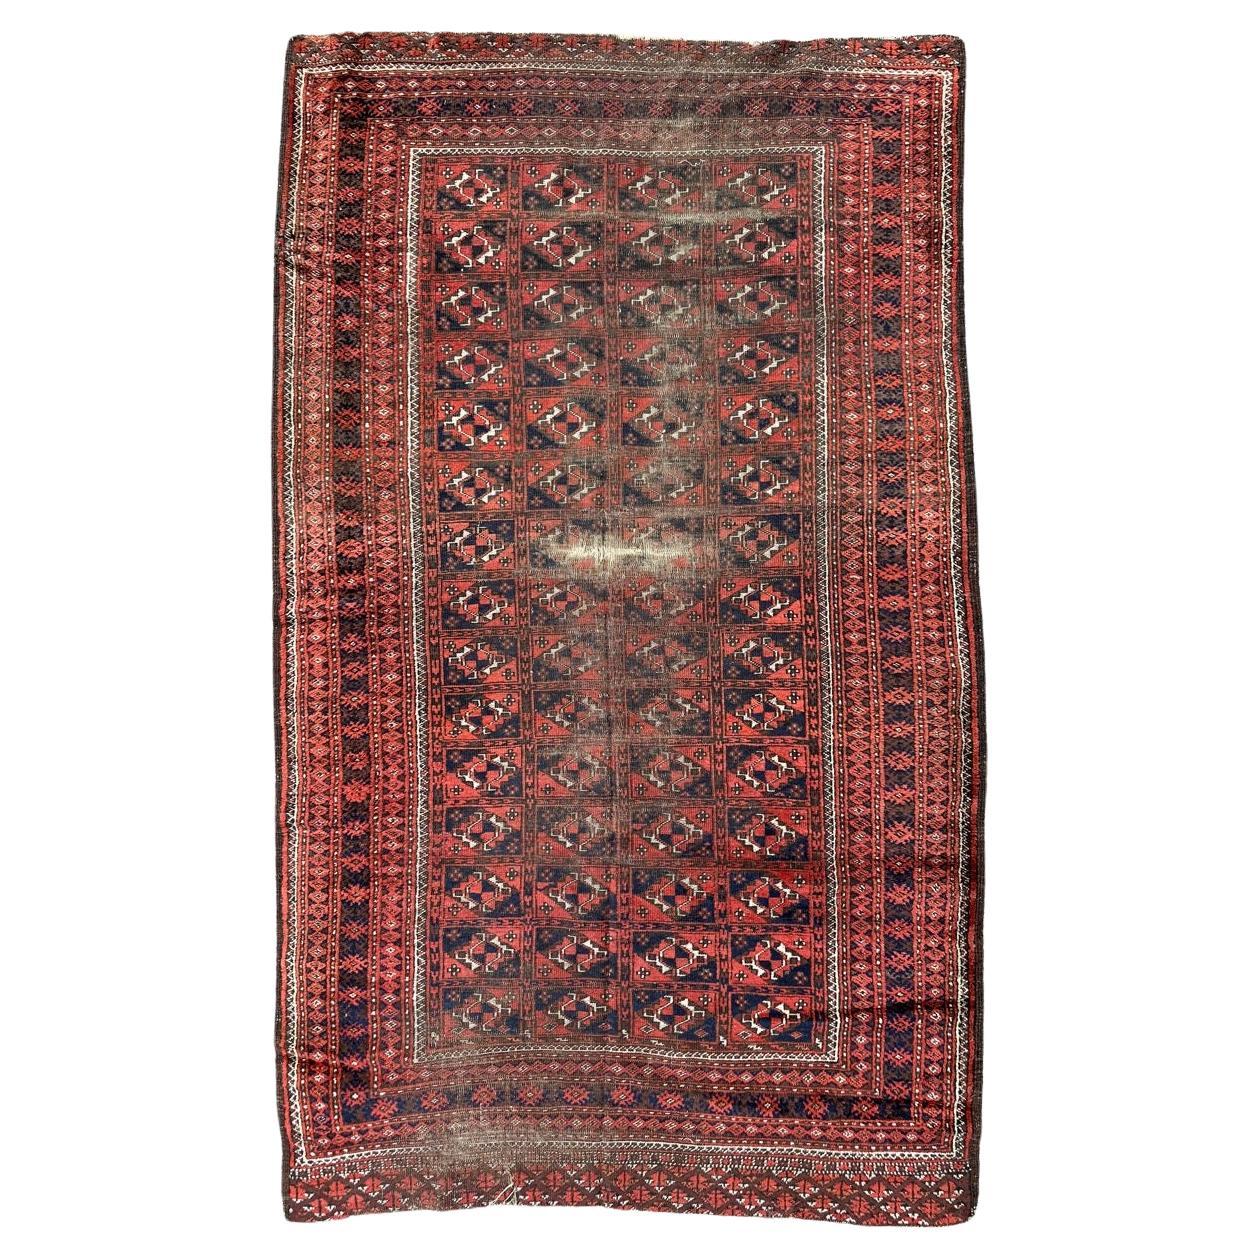 Bobyrug’s nice antique distressed Turkmen rug For Sale